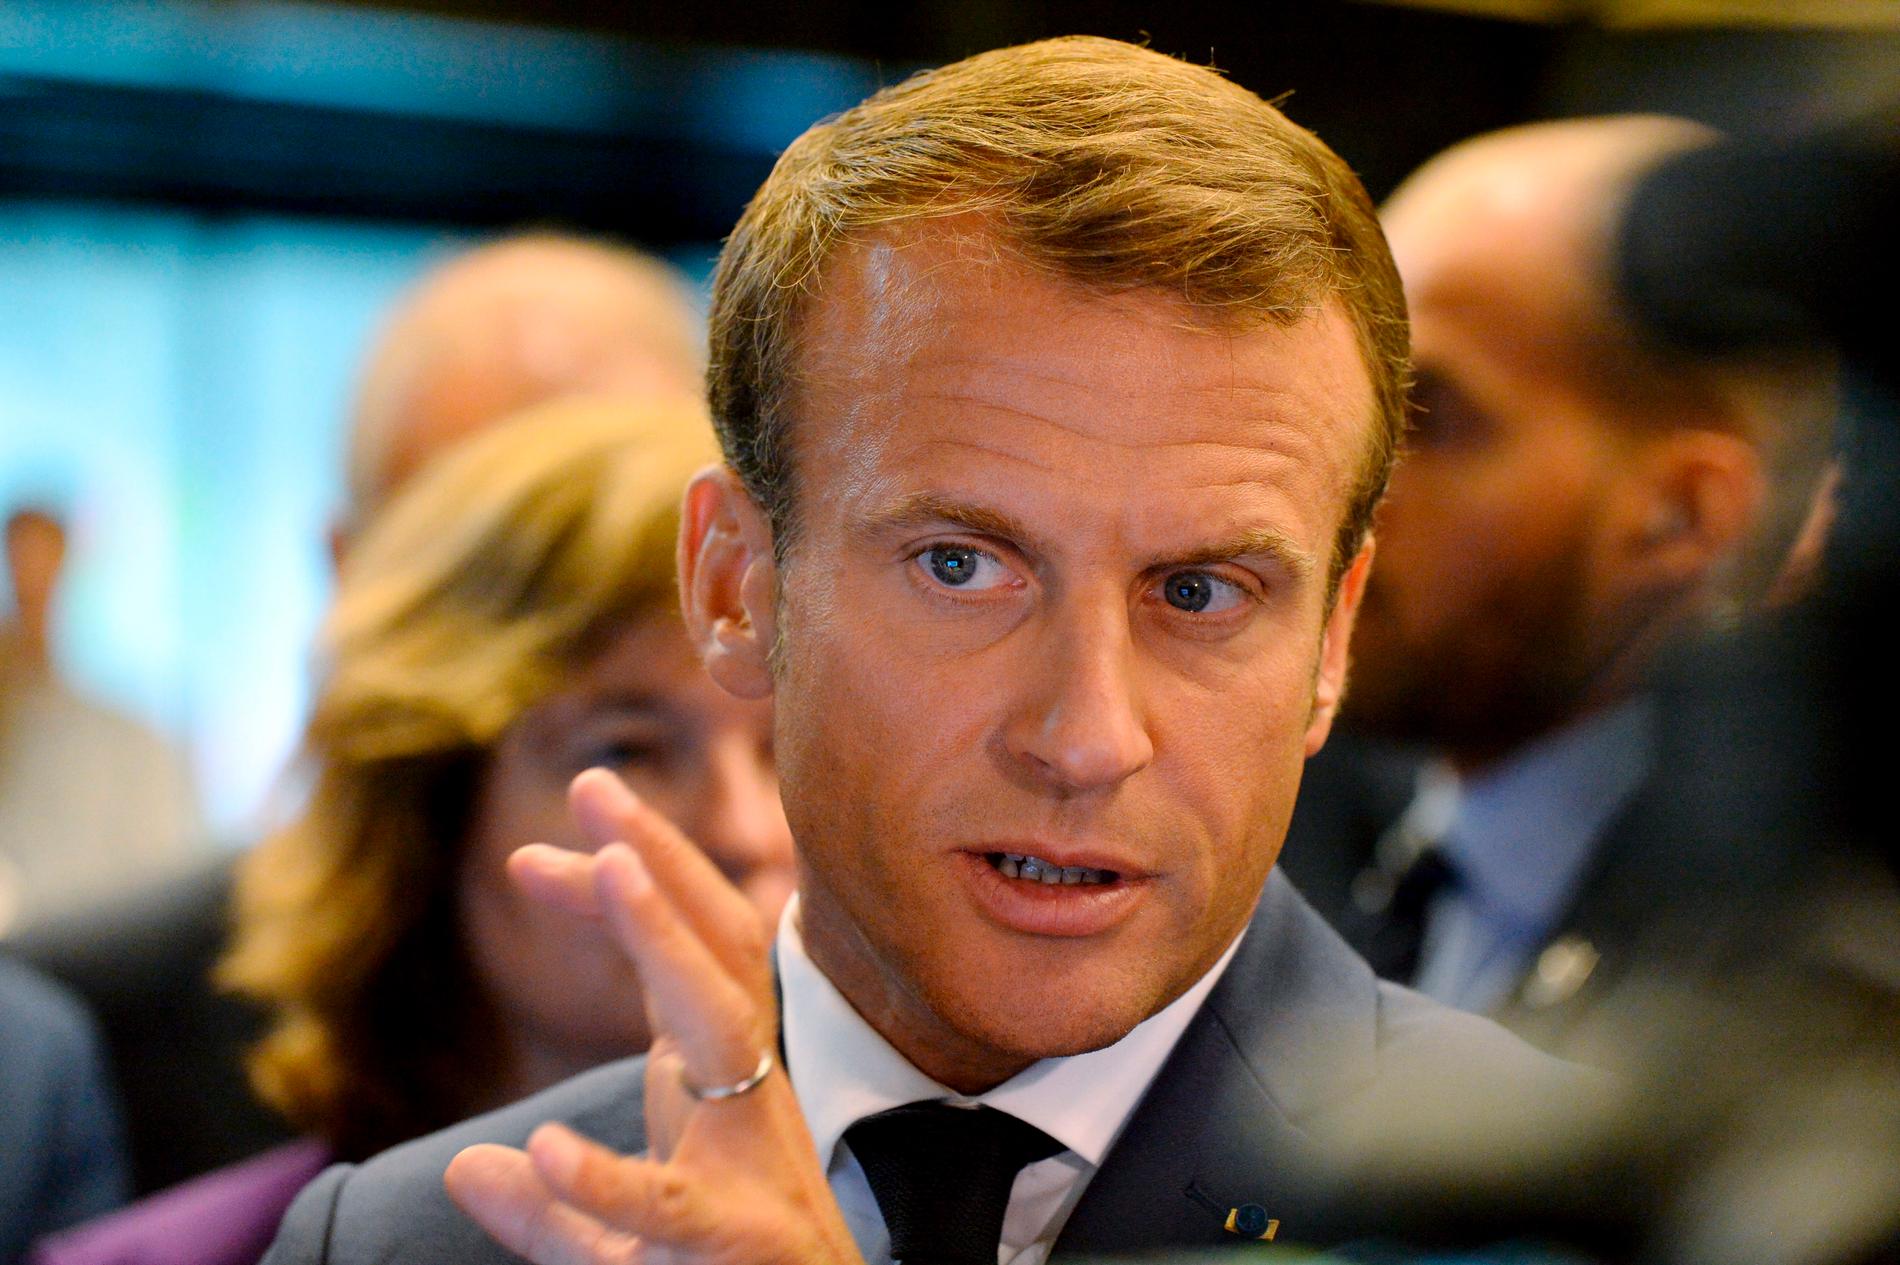 Frankrikes president Emmanuel Macron reagerar på att Jimmie Åkesson inte vill välja mellan honom eller Vladimir Putin. Bilden är tagen i torsdags vid Macrons besök i Finland.